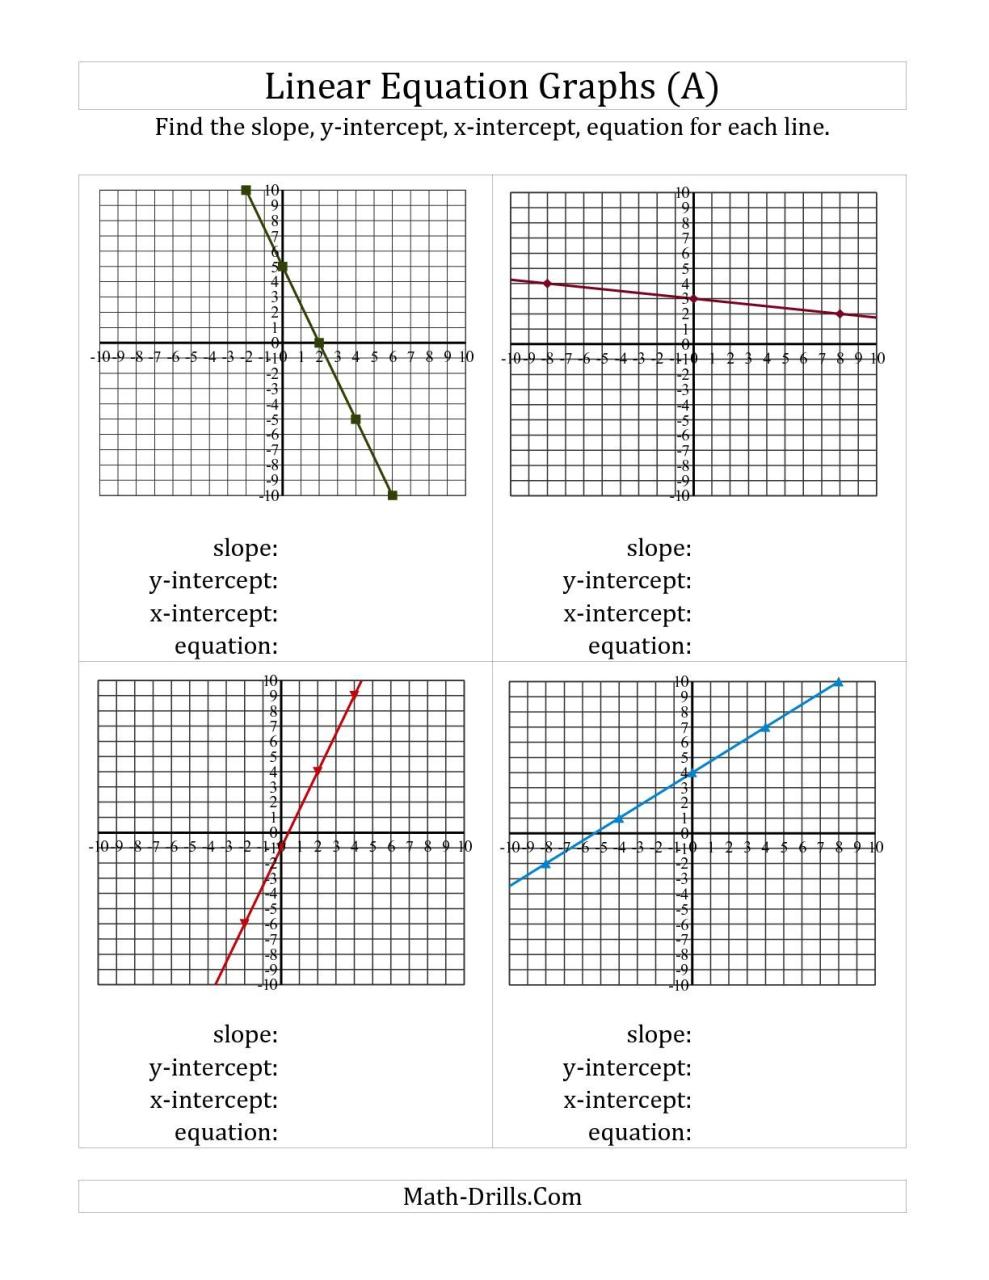 Linear Equations Worksheet For Grade 10 Free Worksheet